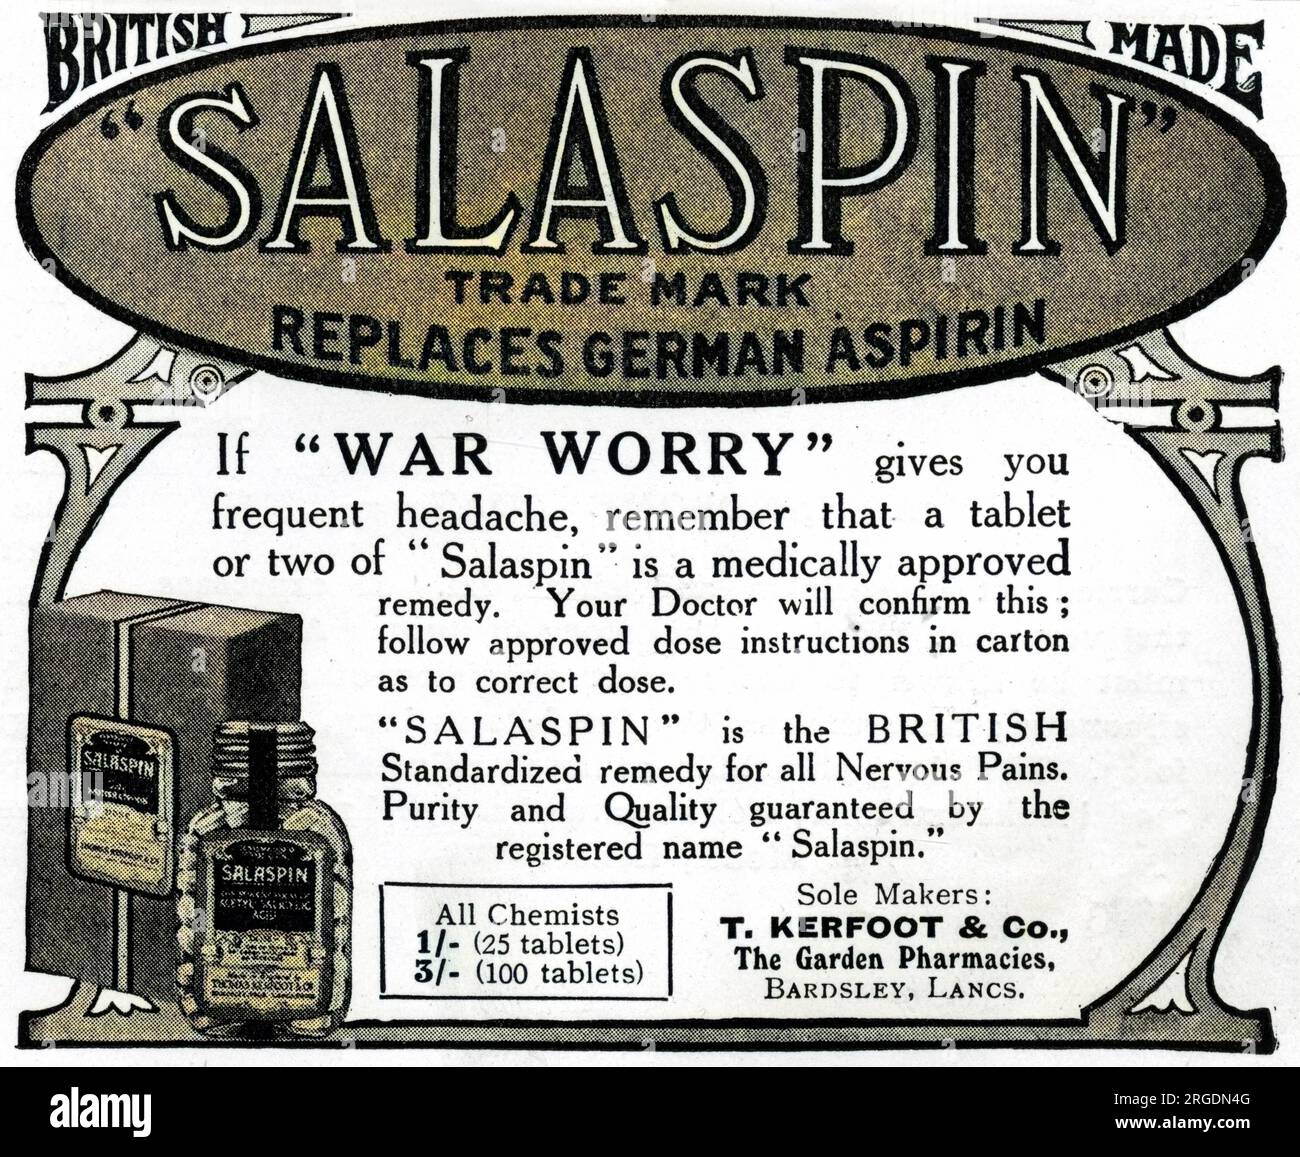 Publicité pour Salaspin, un remède contre les maux de tête fabriqué par les Britanniques, avec un ou deux comprimés capables de soulager les maux de tête provoqués par «l'inquiétude de guerre». La publicité indique très clairement qu'elle remplace l'aspirine allemande. Banque D'Images